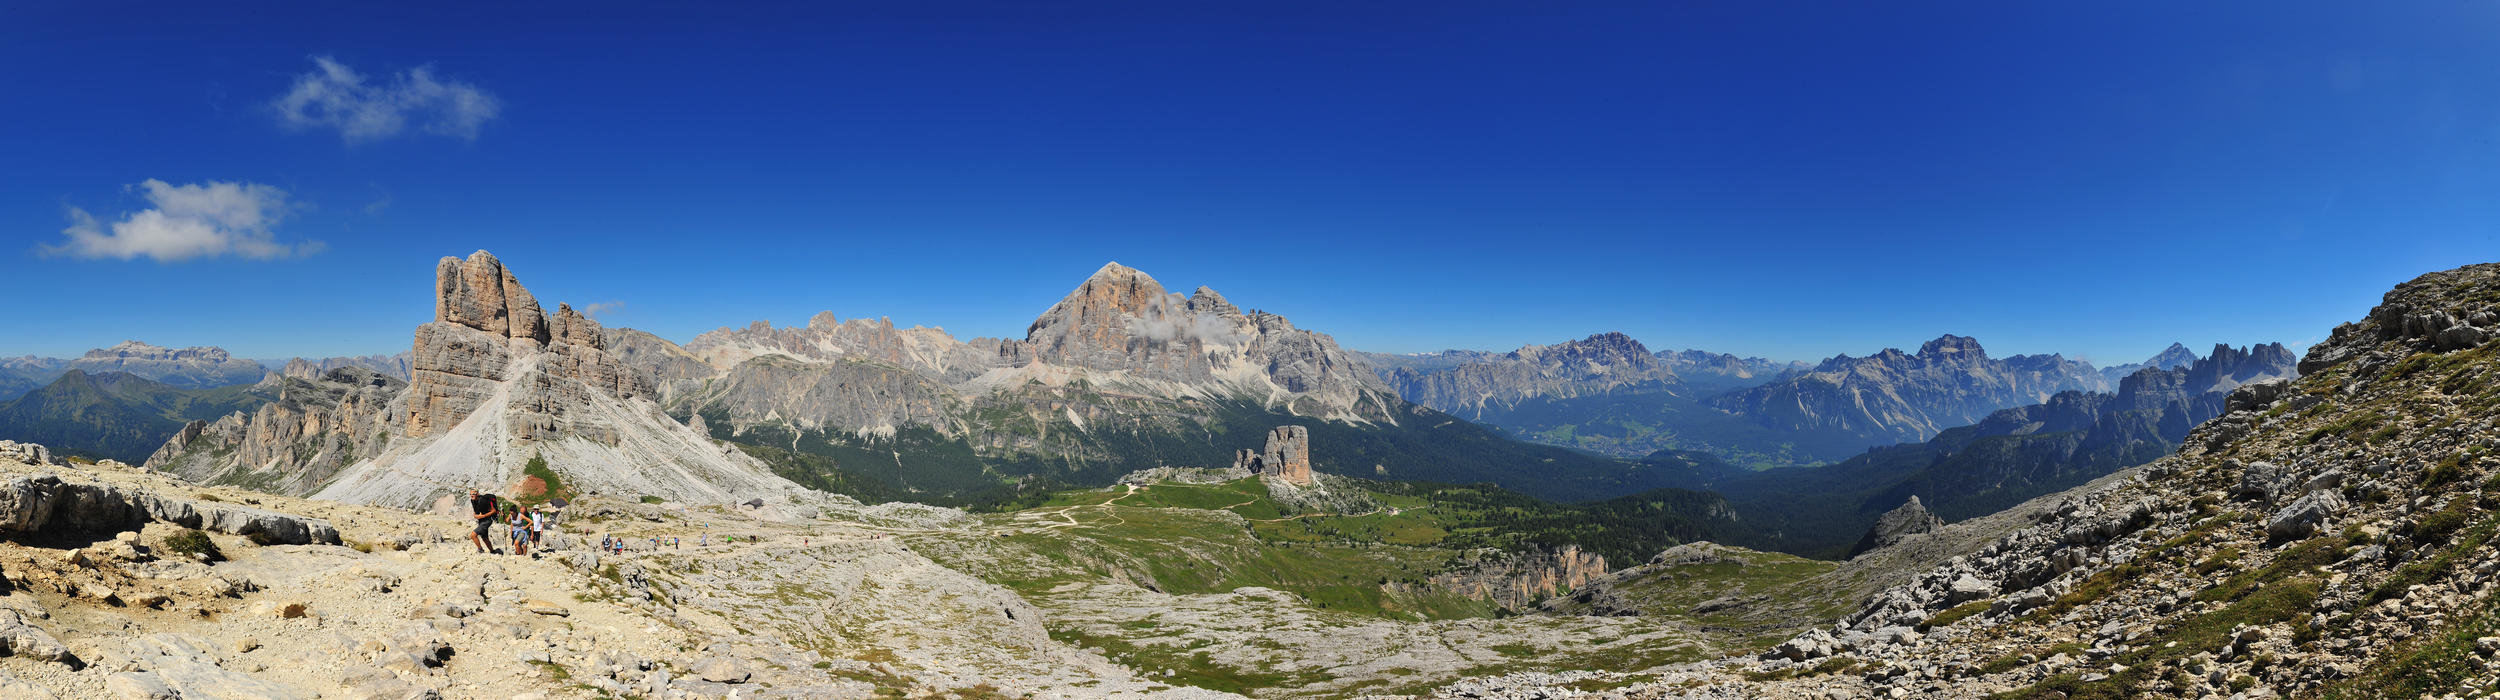 Dolomiti, panoramica dai pressi del rifugio Nuvolau